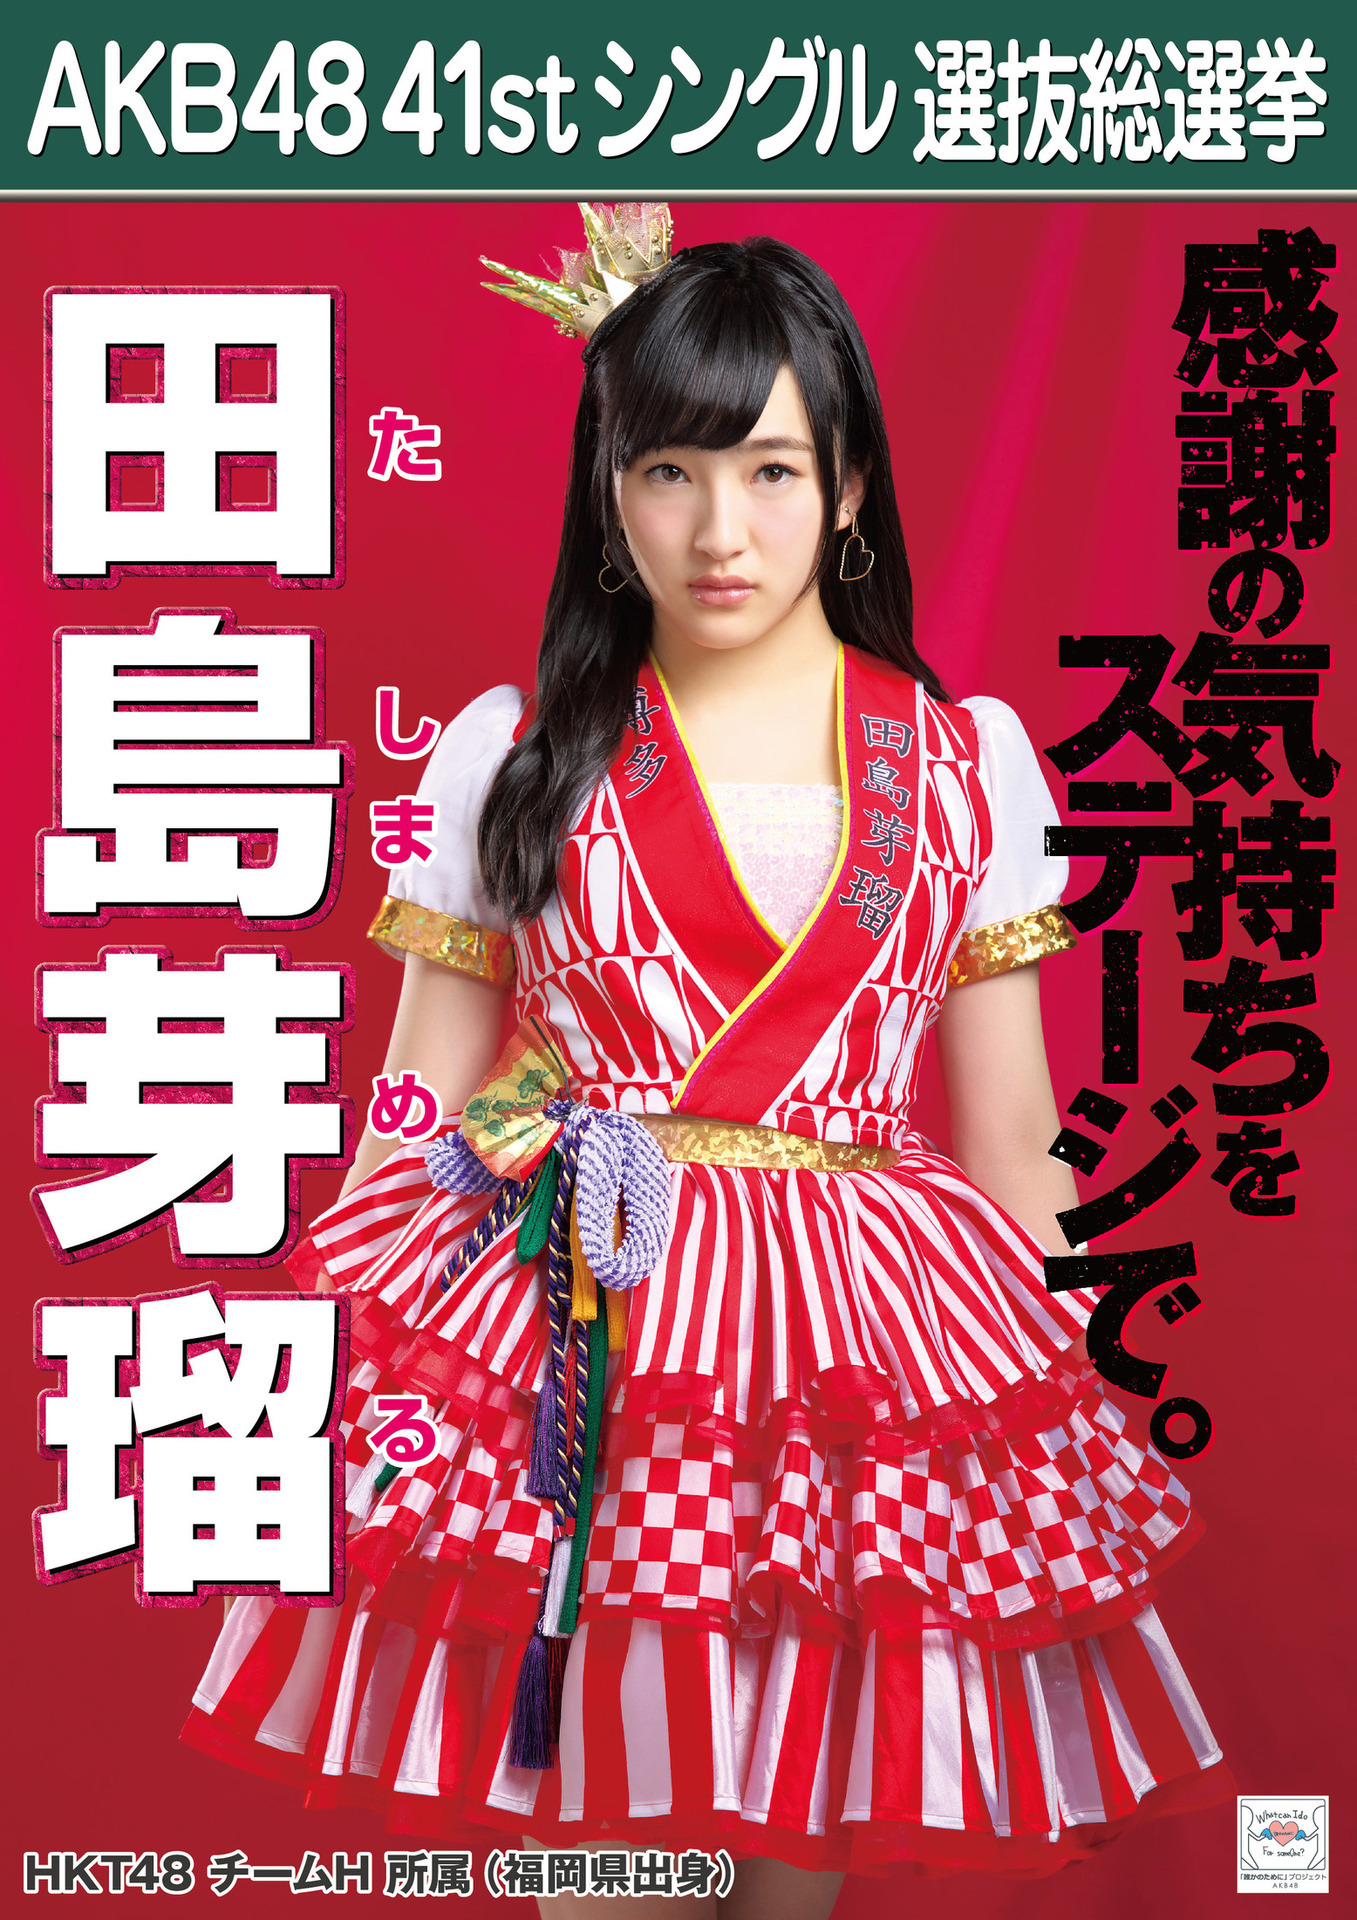 ハッピ風の衣装で総選挙のポスターに写るHKT48の田島芽瑠